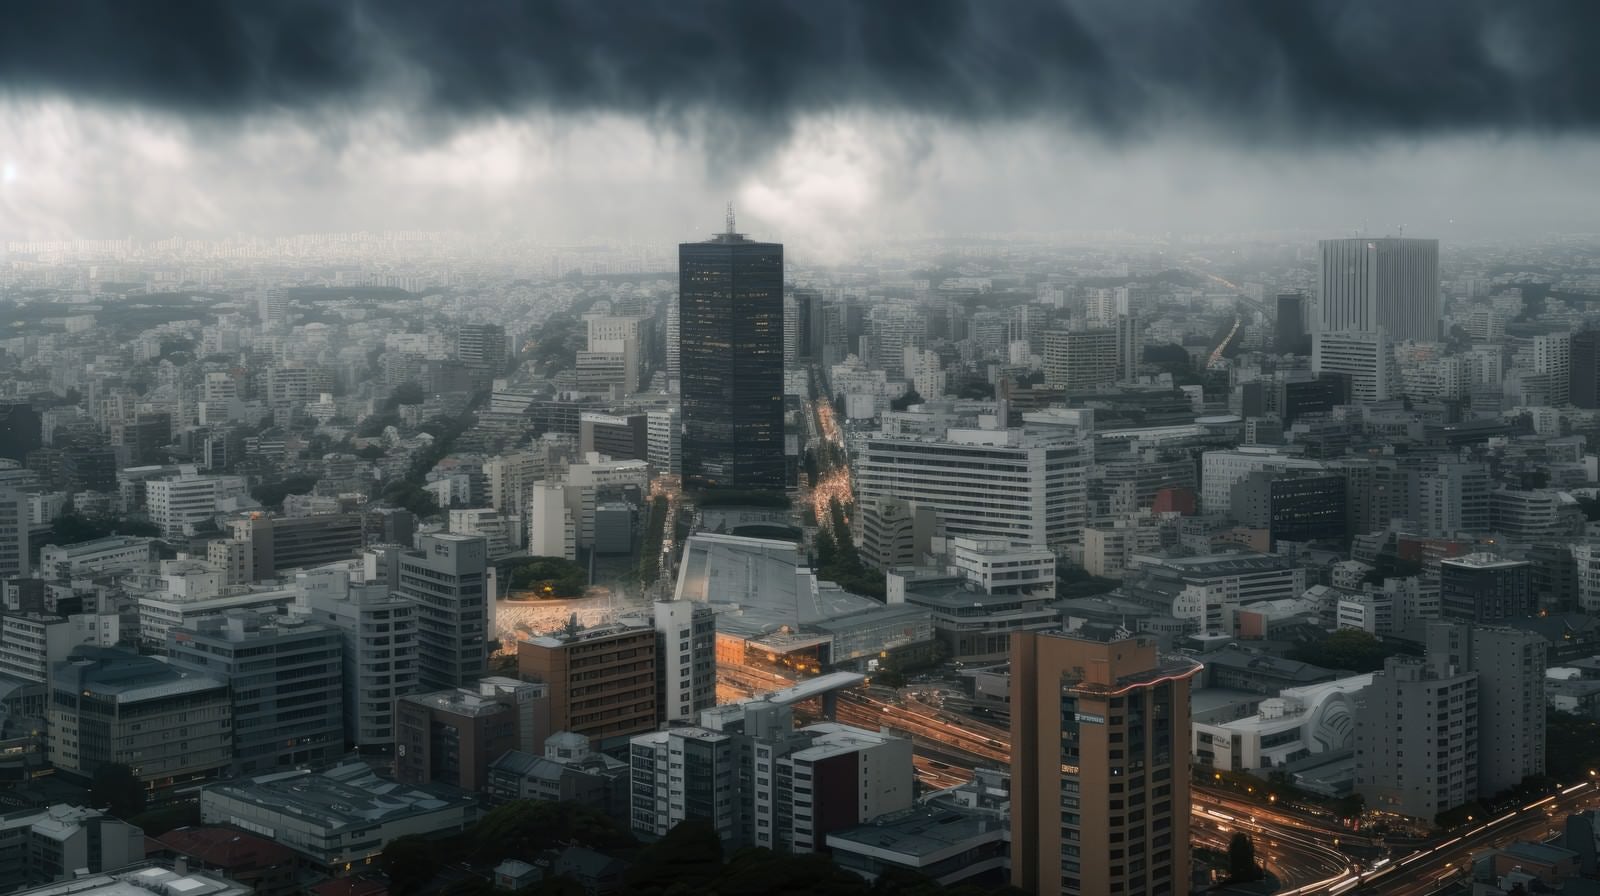 「巨大な都市を見下ろすように蠢く雲」の写真